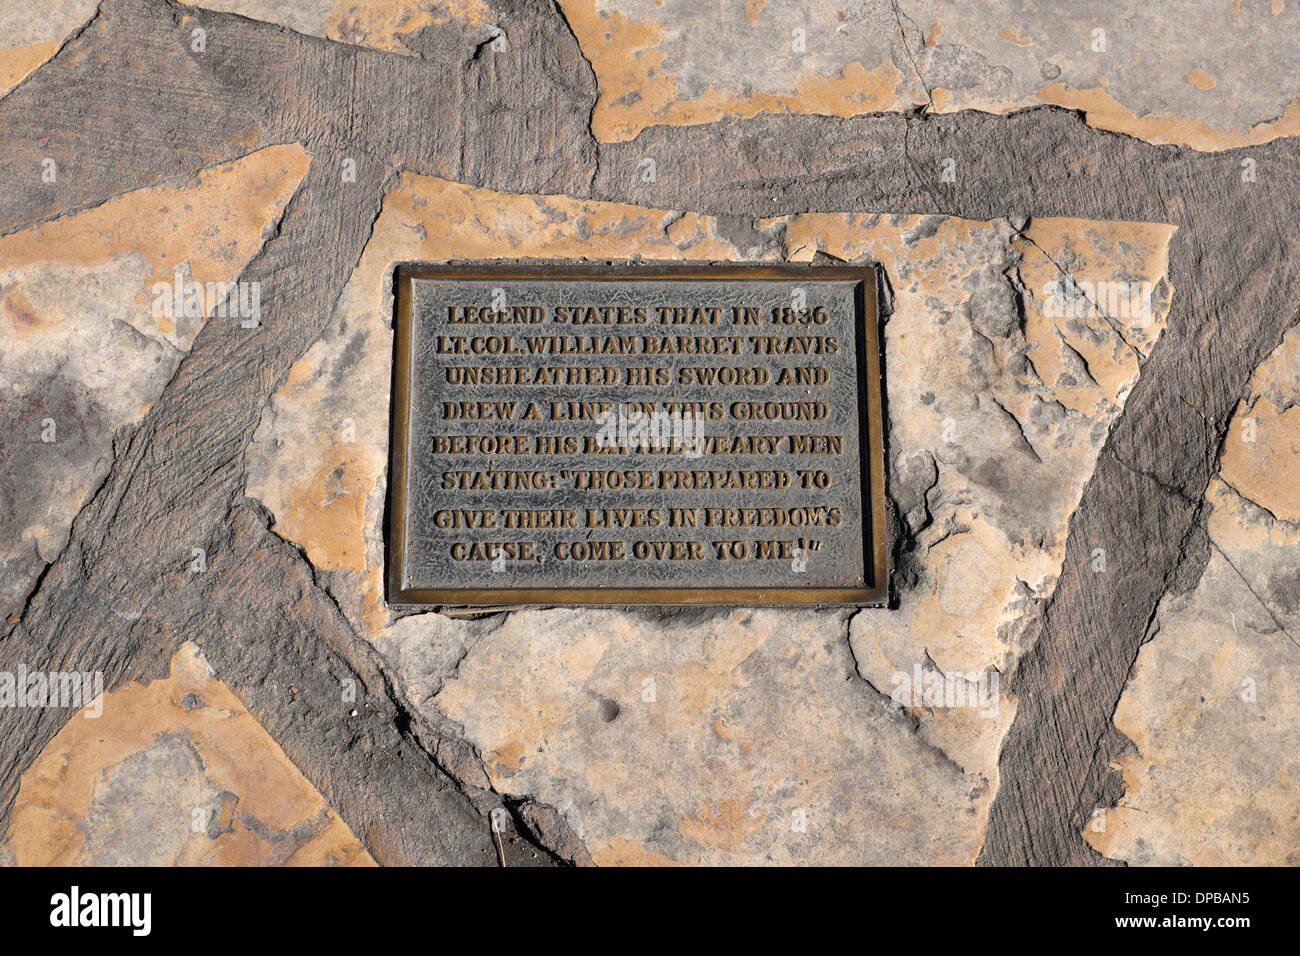 Linie bei Alamo - Oberstleutnant William Barret Travis zog eine Linie im Alamo lädt seine Männer zu Schritt über und sterben für die Freiheit Stockfoto